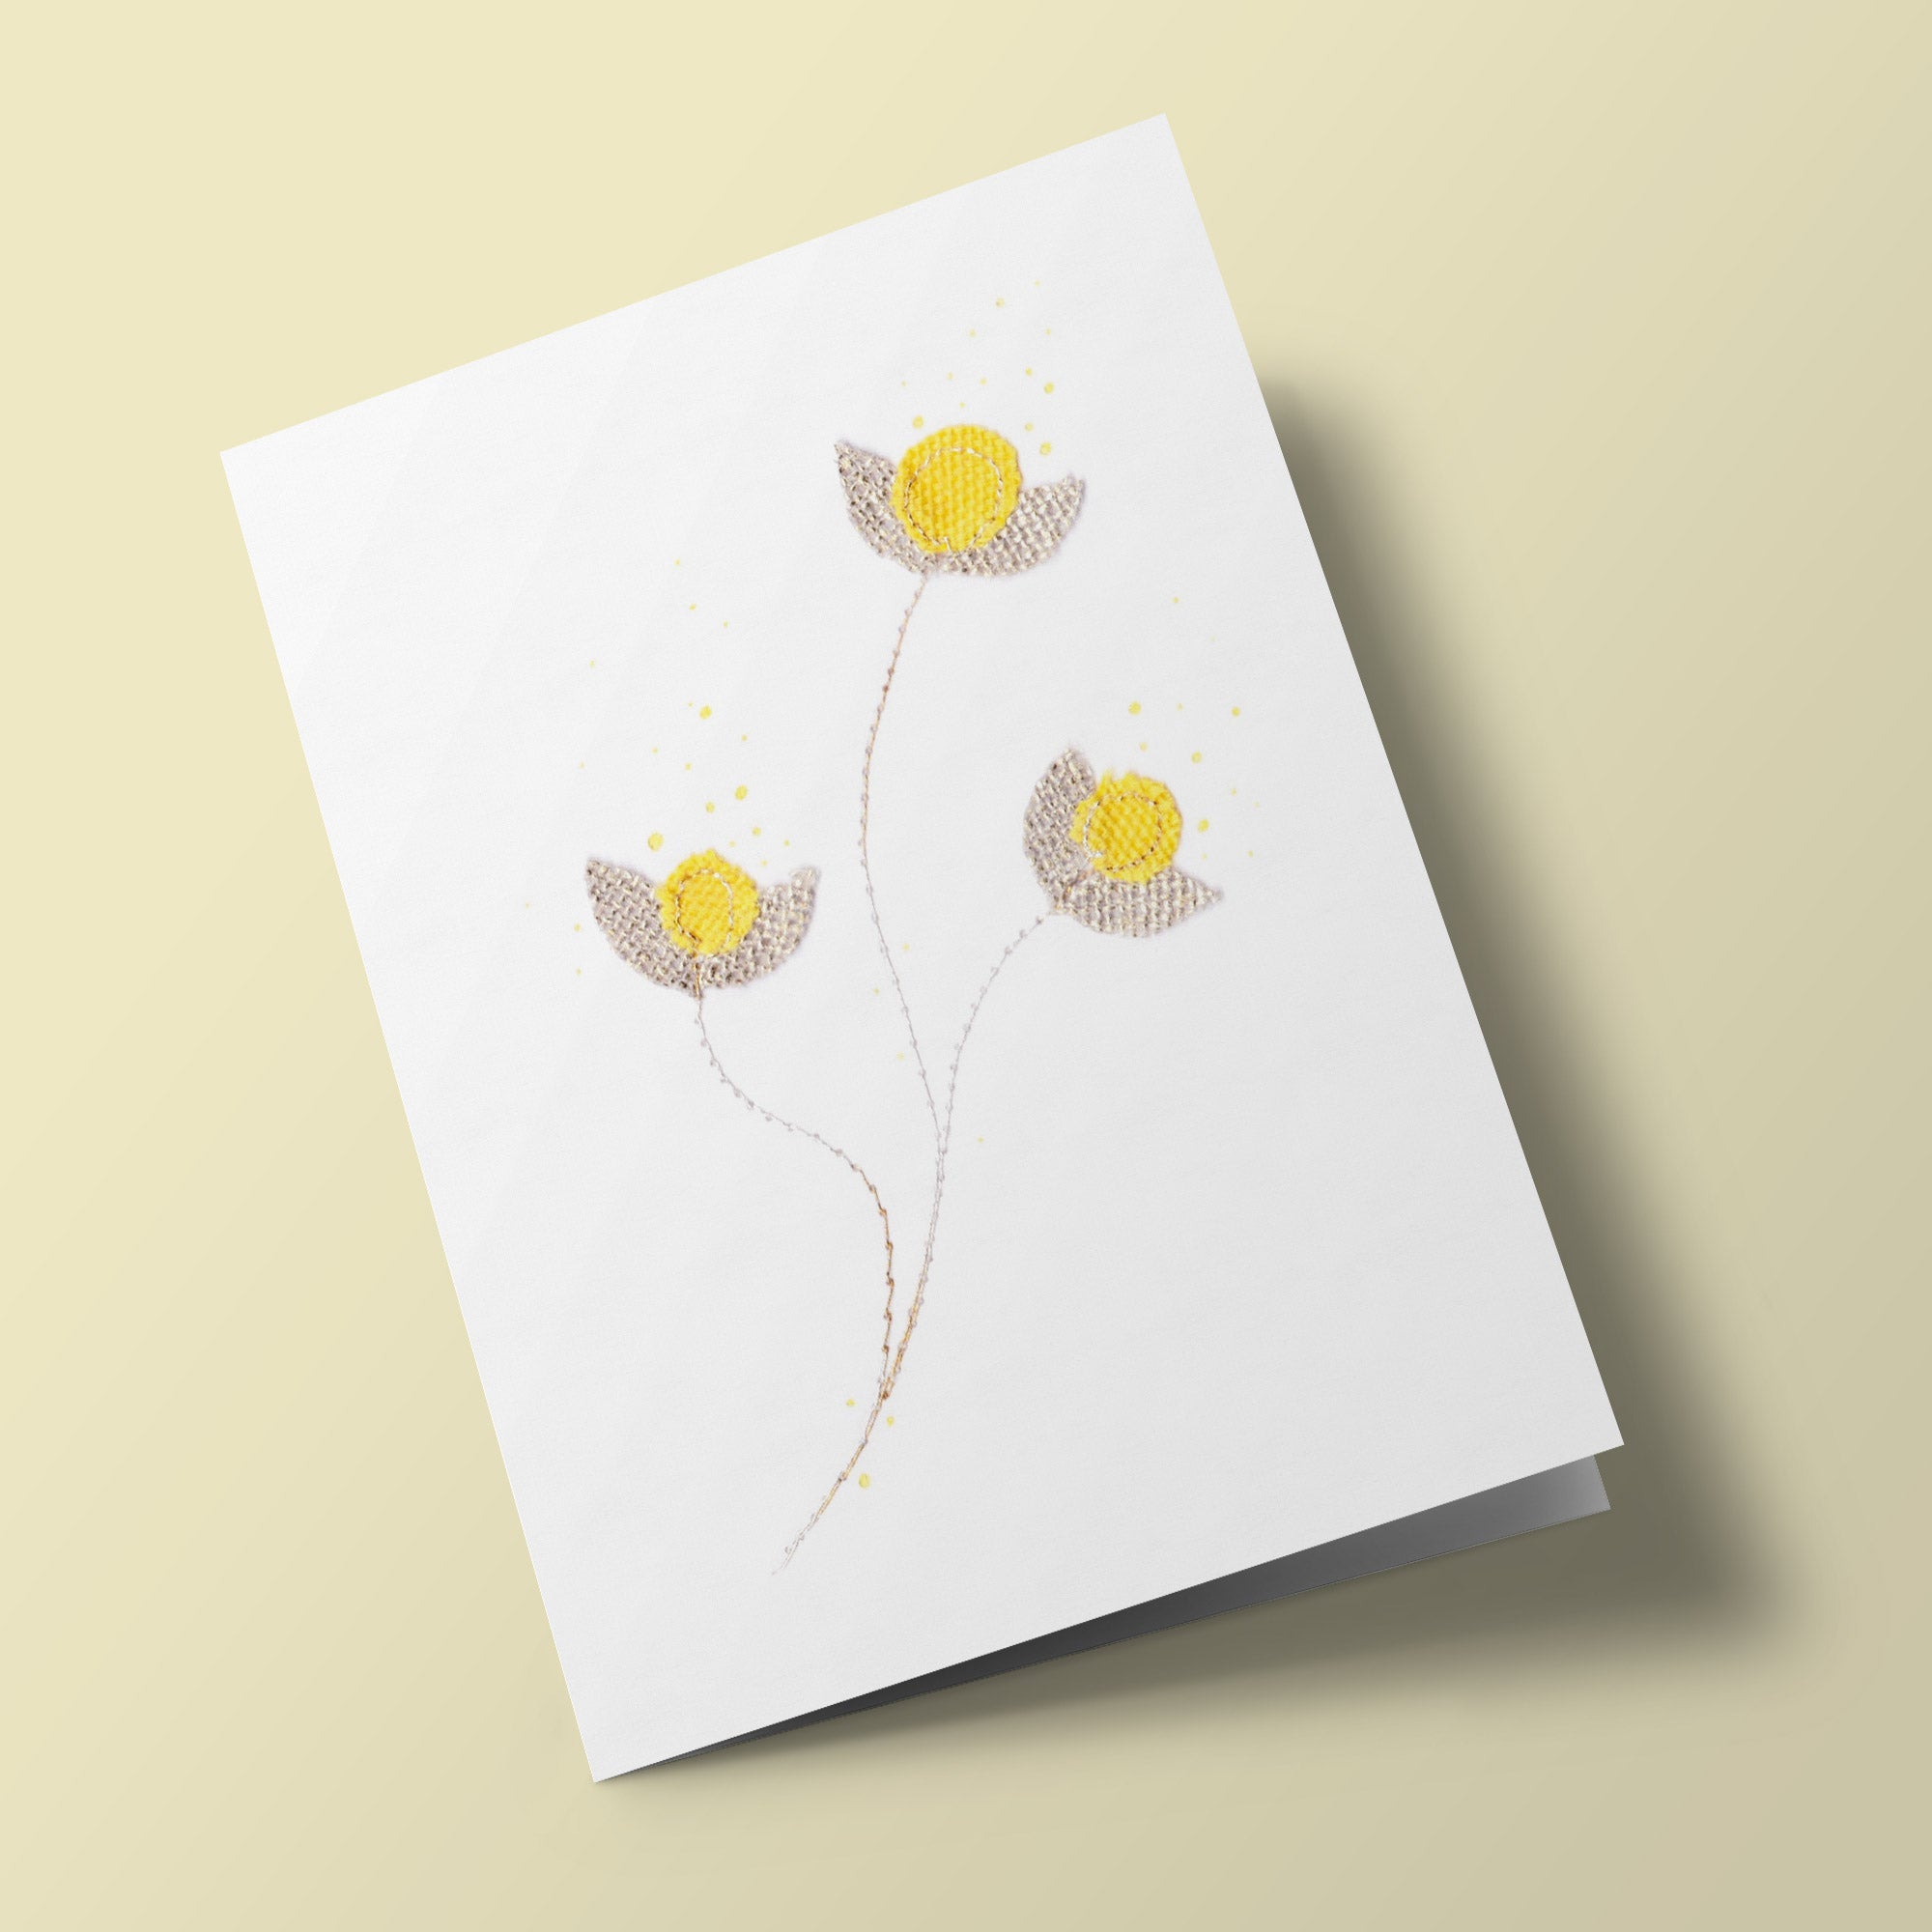 Fleurs de coton - Boutons d'or - carte cousue